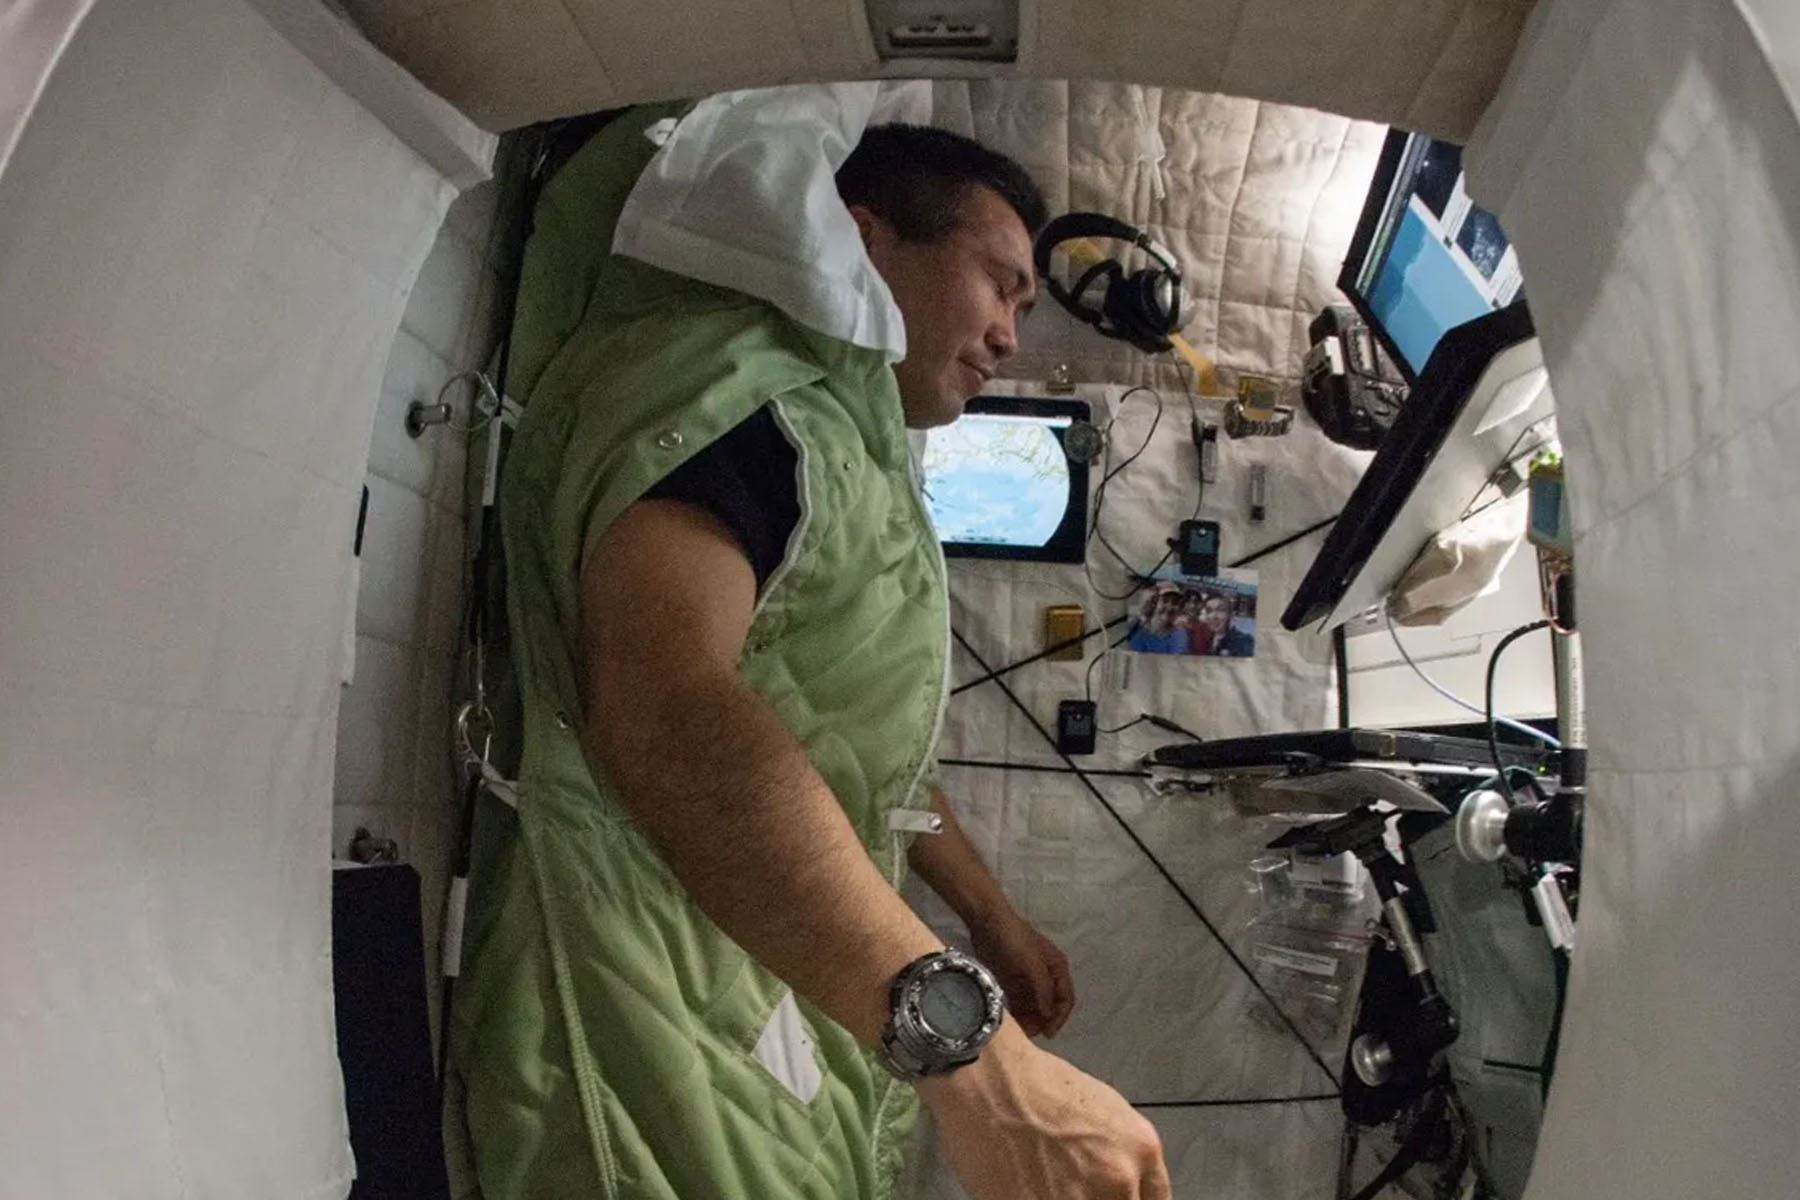 Los desajustes del ritmo circadiano y la falta de sueño ocurren durante los vuelos espaciales de corta y larga duración, y pueden ser causantes de errores importantes inducidos por el cansancio y la carencia de horas de sueño a largo plazo. Foto: NASA